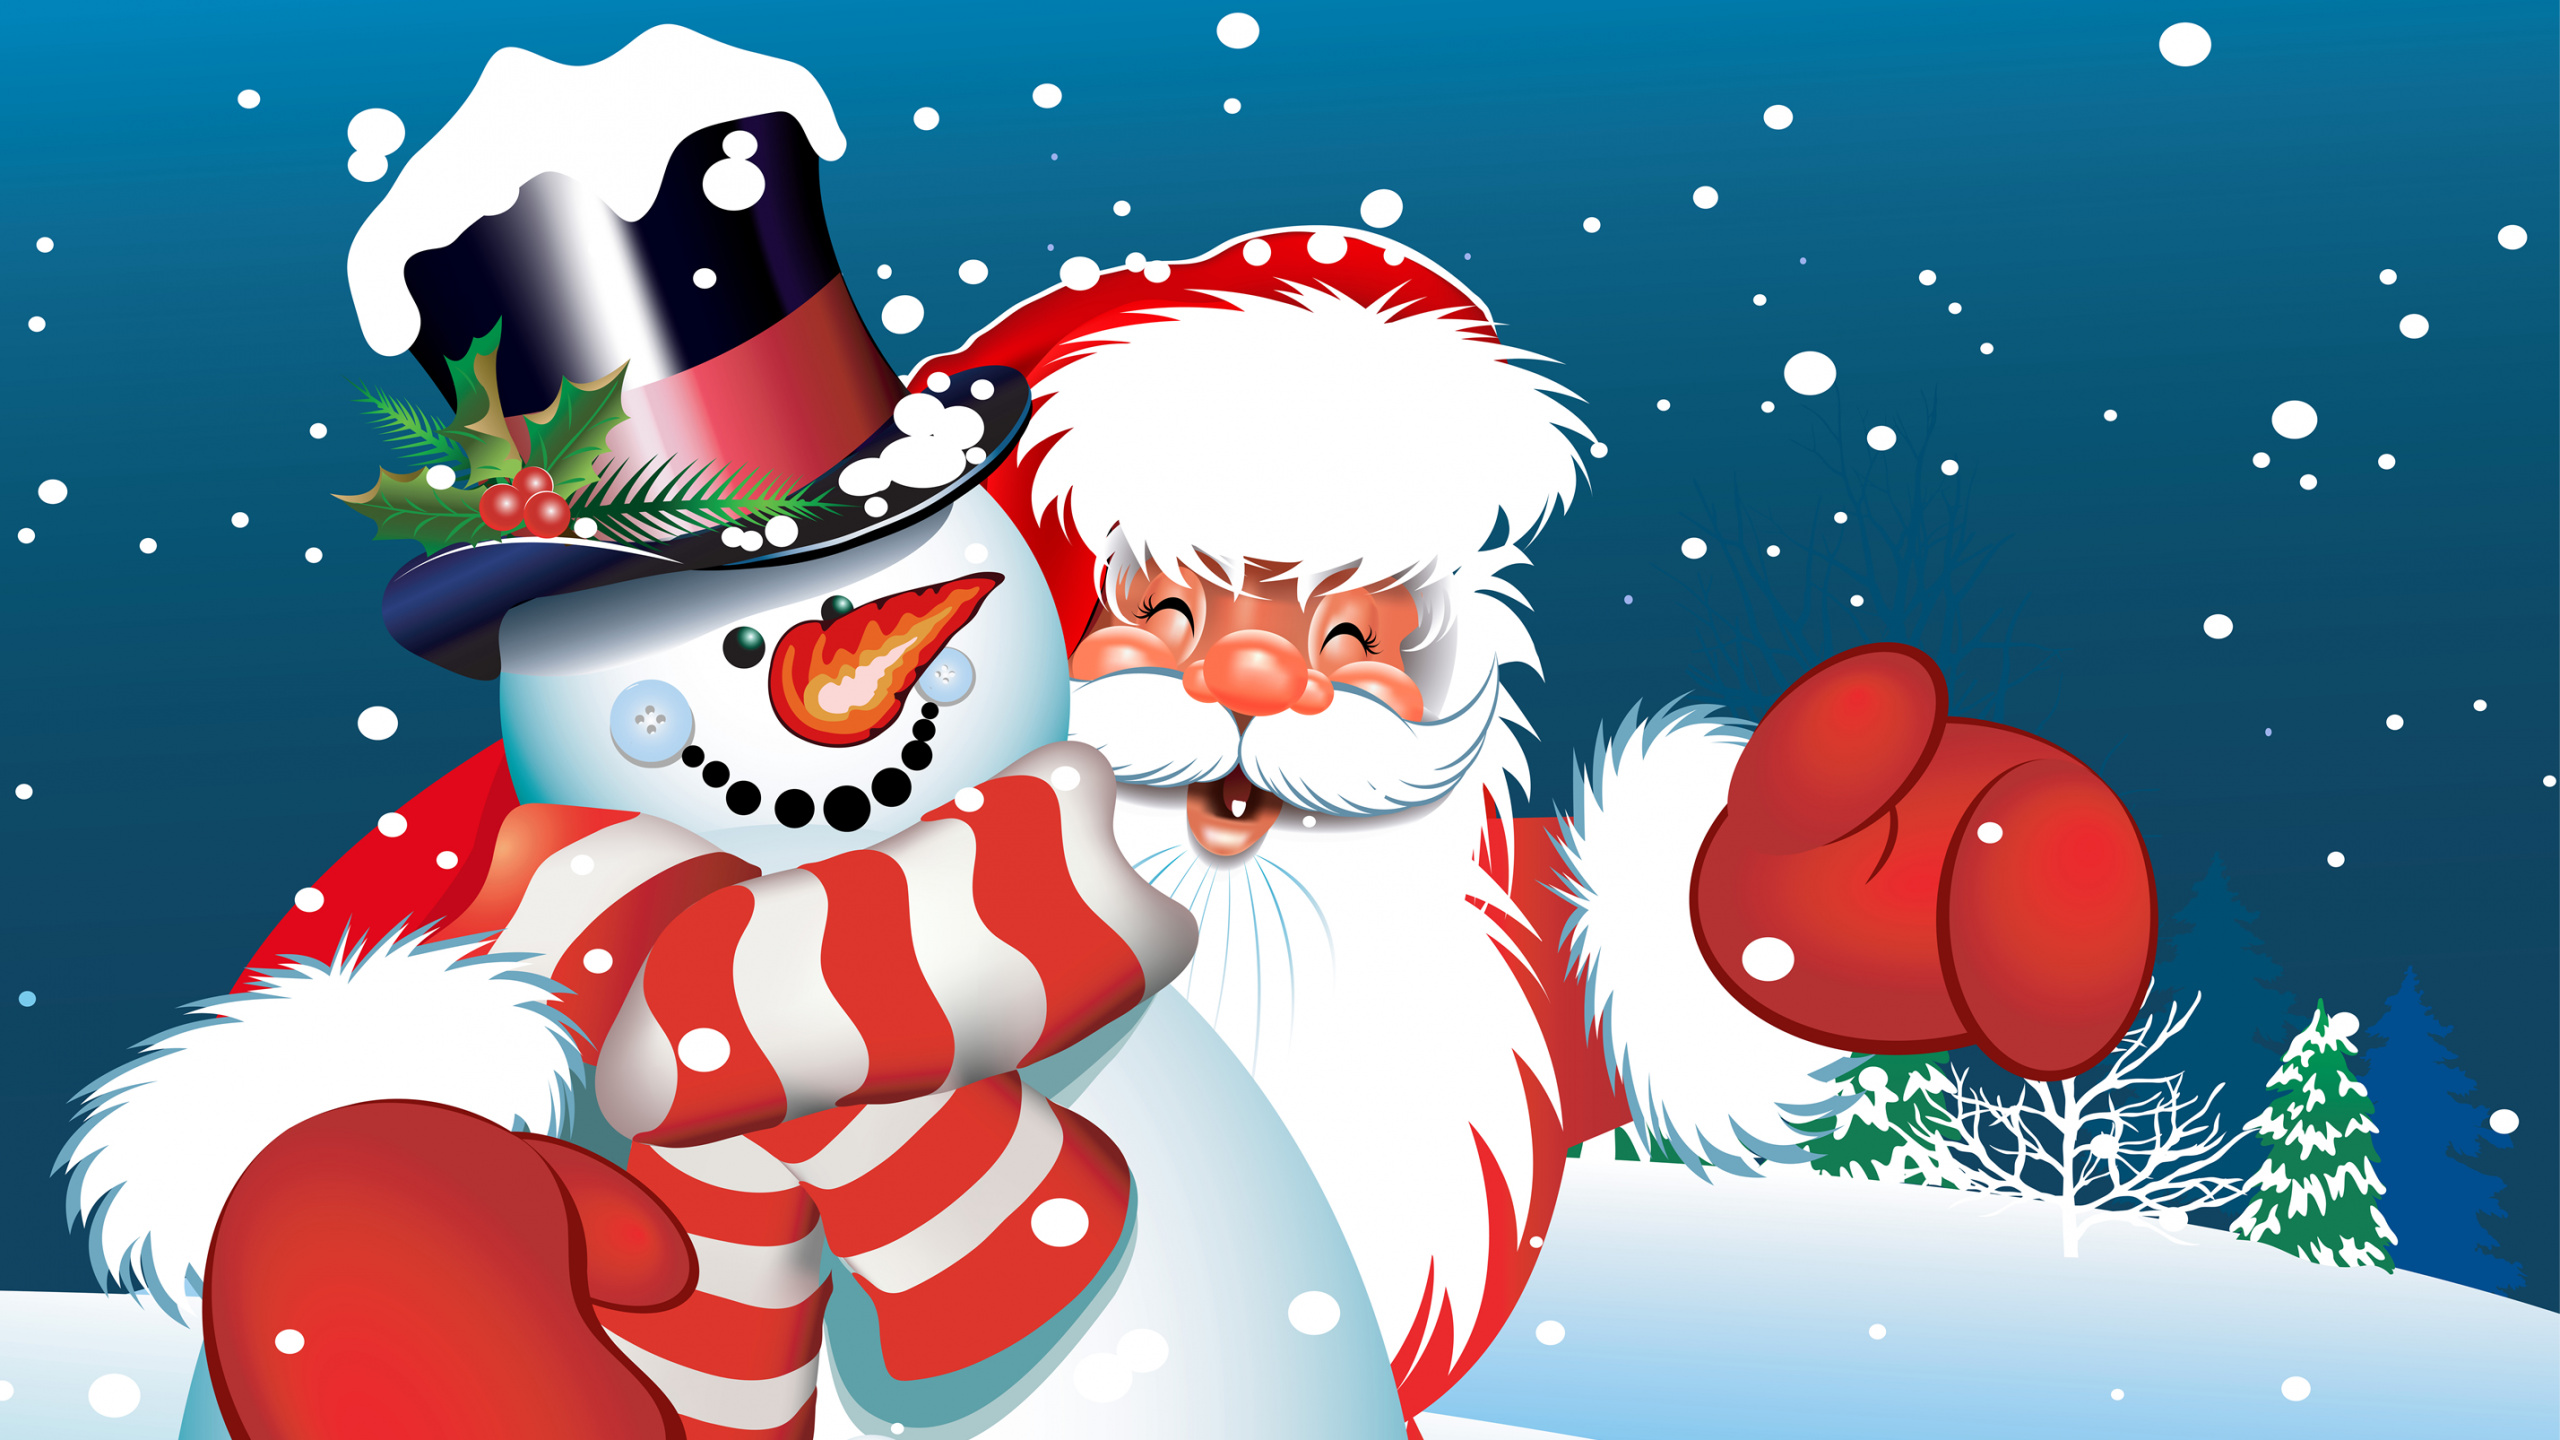 圣诞老人, 圣诞节那天, 雪人, 圣诞节, 卡通 壁纸 2560x1440 允许